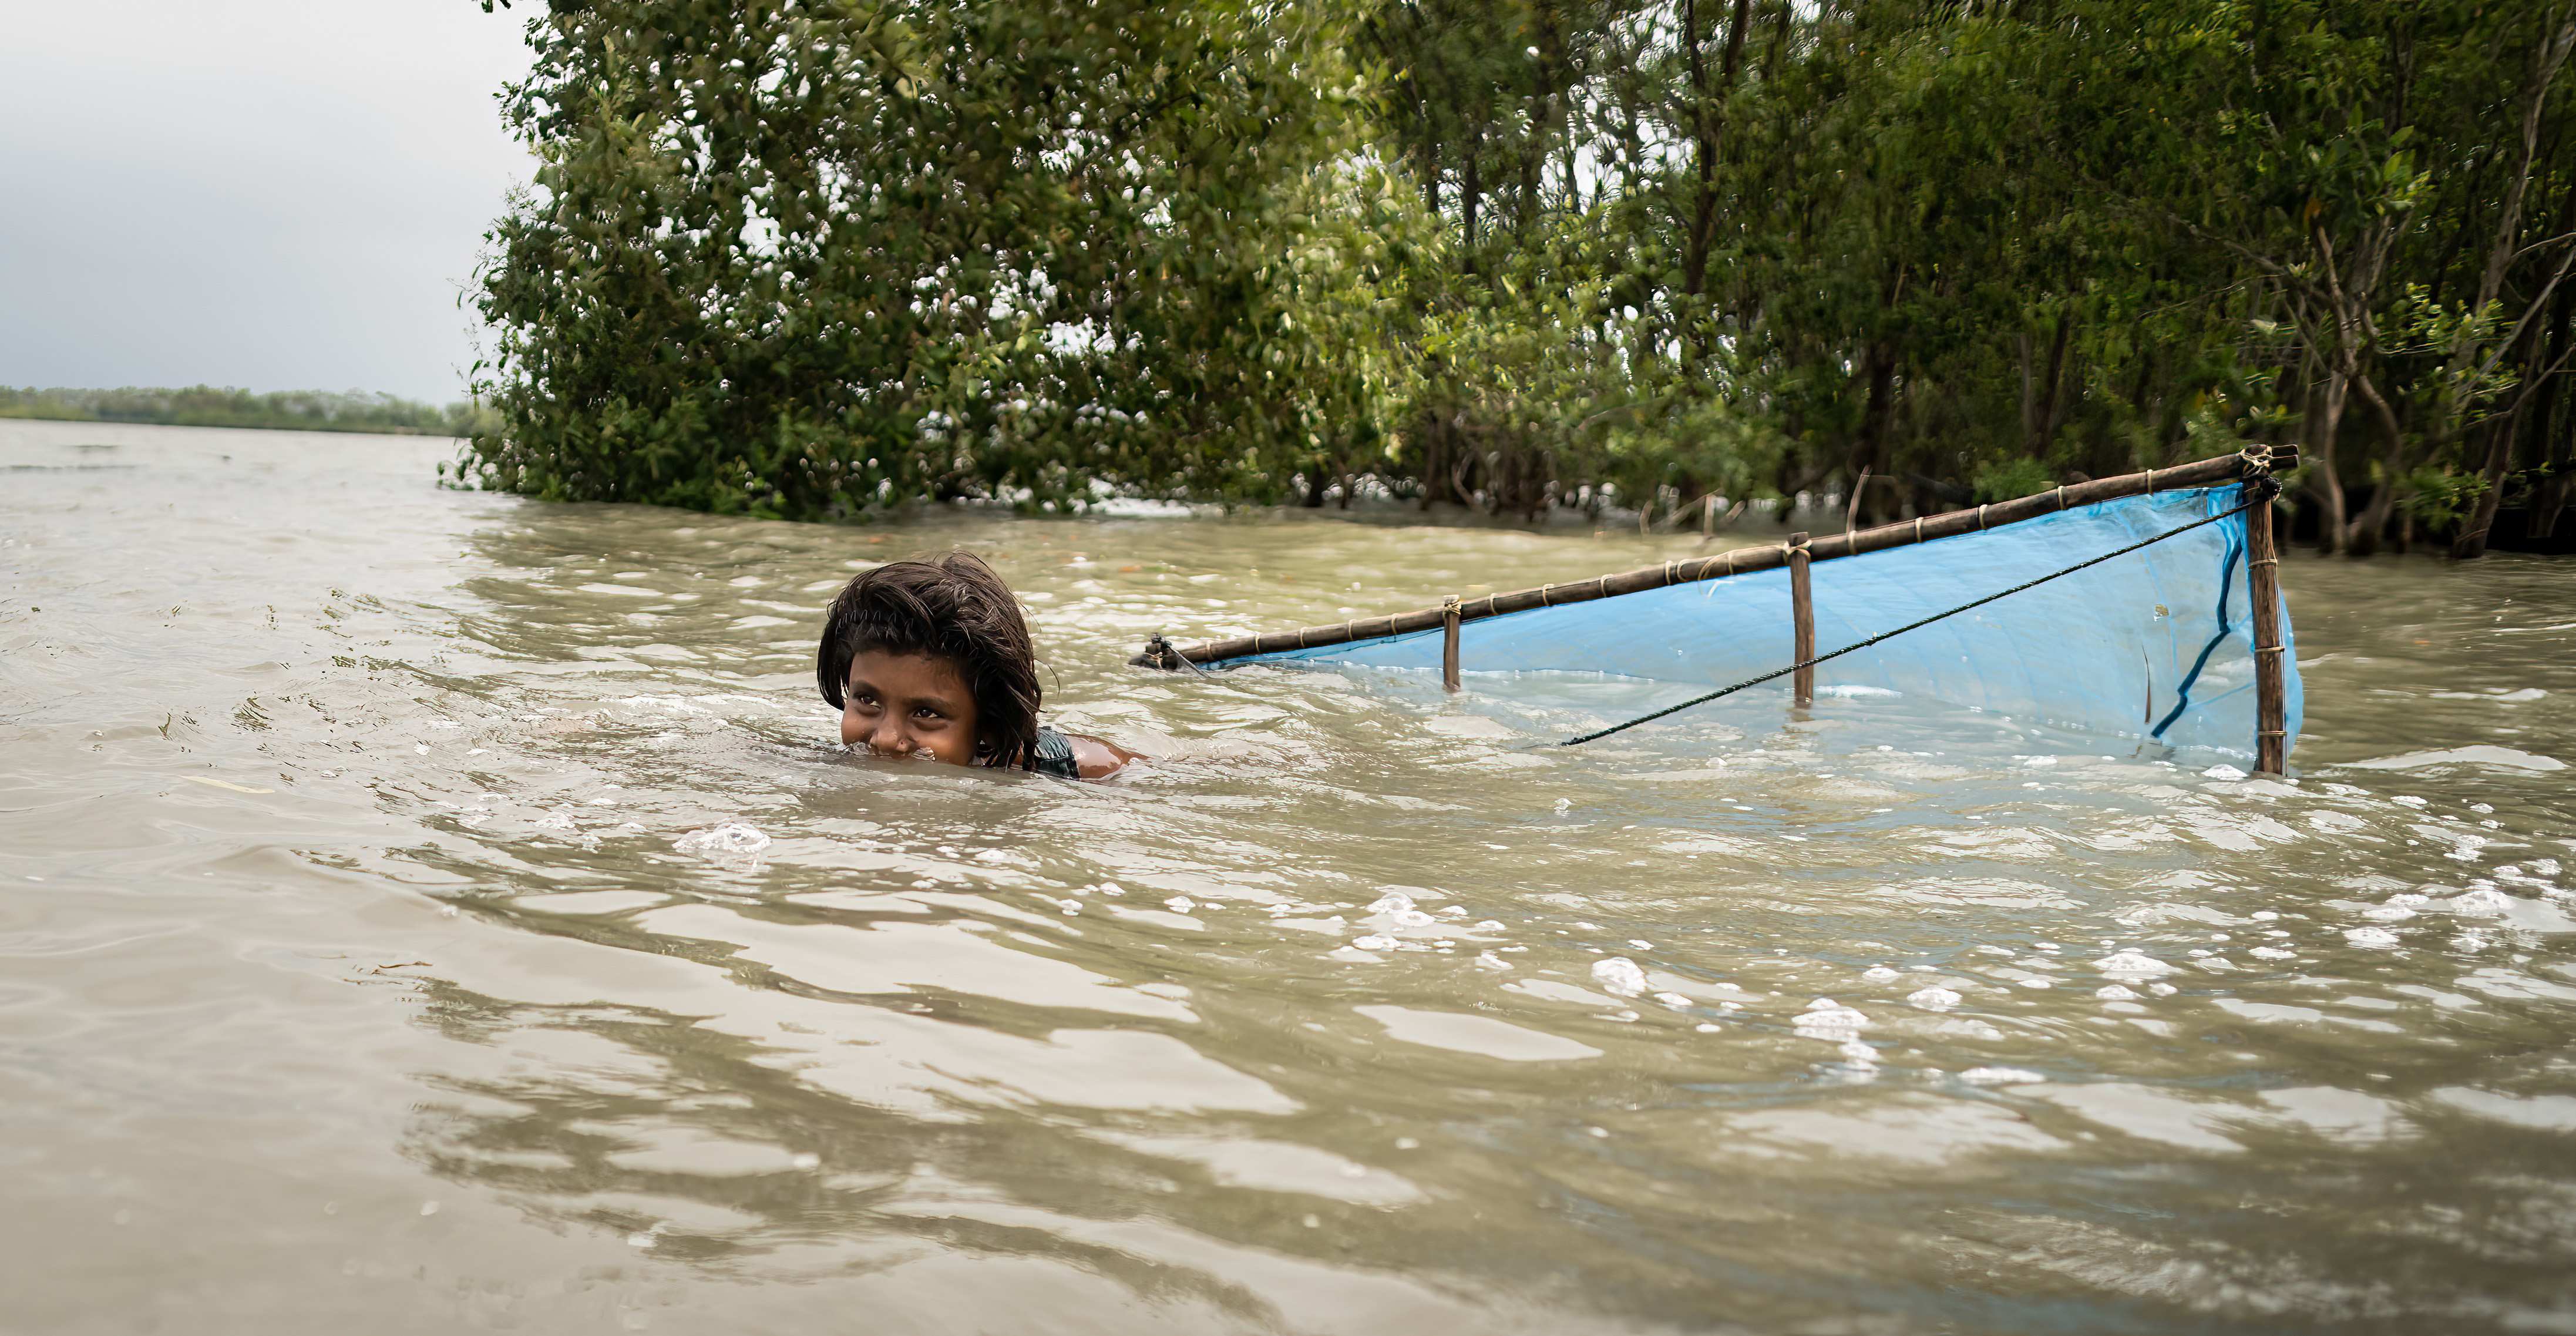 Bangladesch: Ein Mädchen schwimmt im Wasser und fischt Shrimps (Quelle: Lars Heidrich)